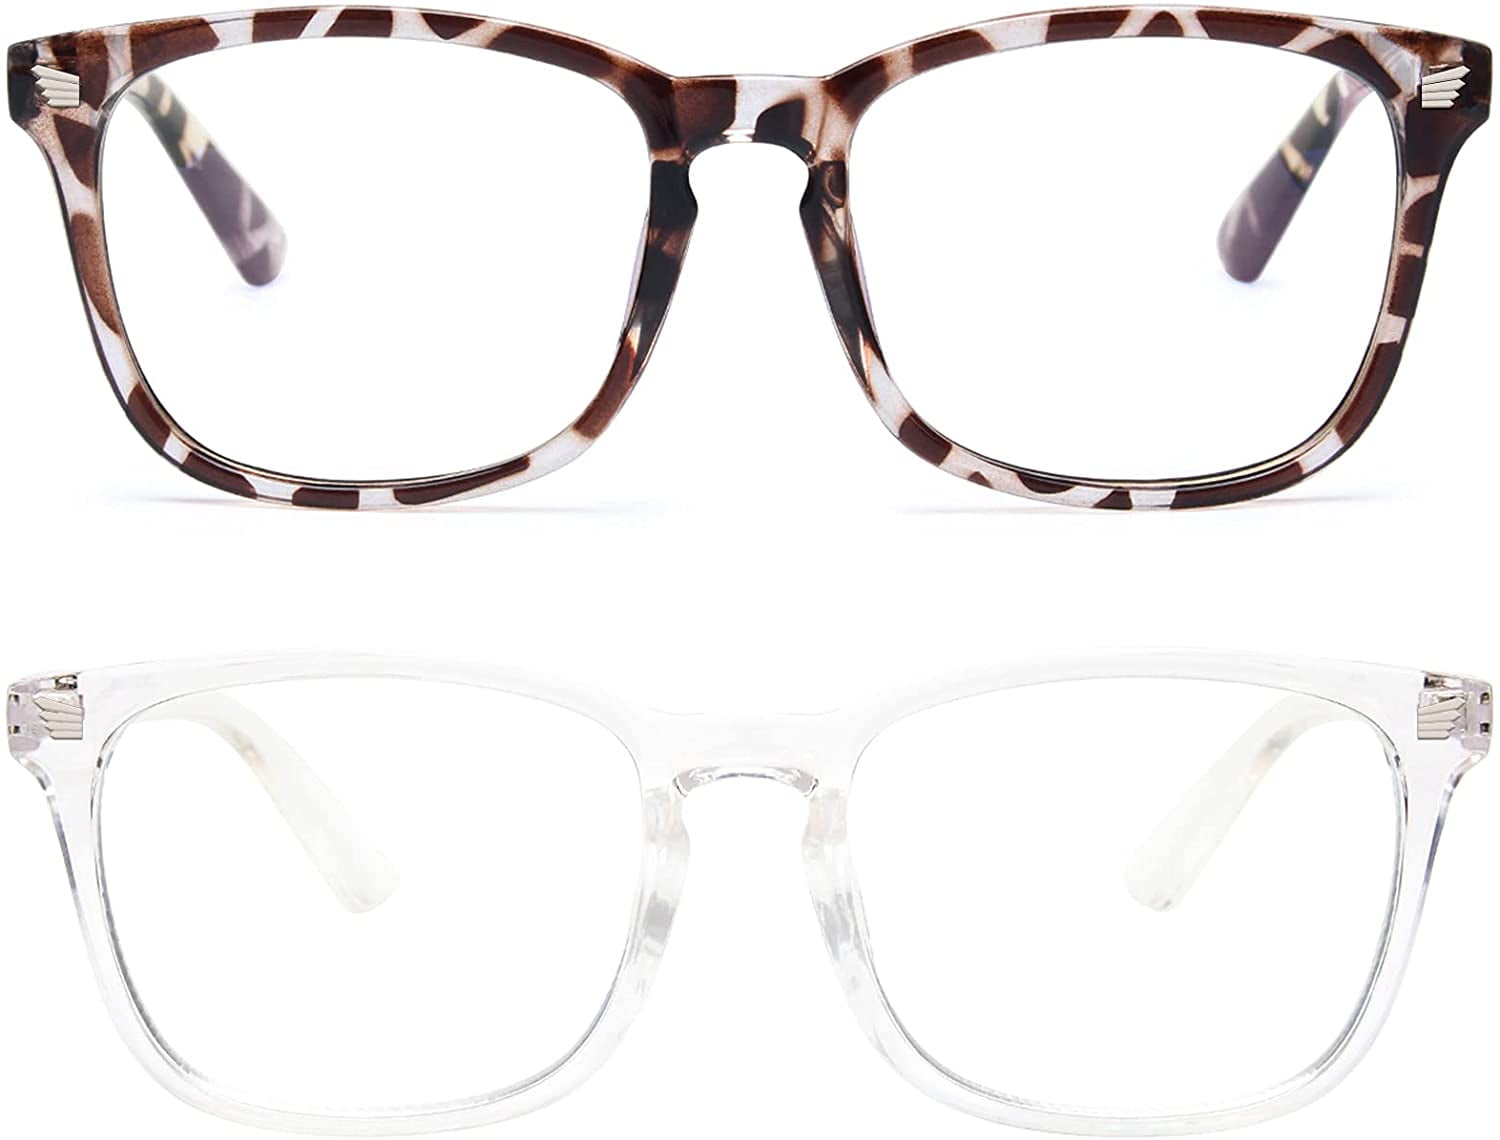 Blue Light Glasses Oval Eyeglasses Frame Filter Blue Ray Computer Game/Reading/TV/Phones Glasses UV400 Protection Black/White 